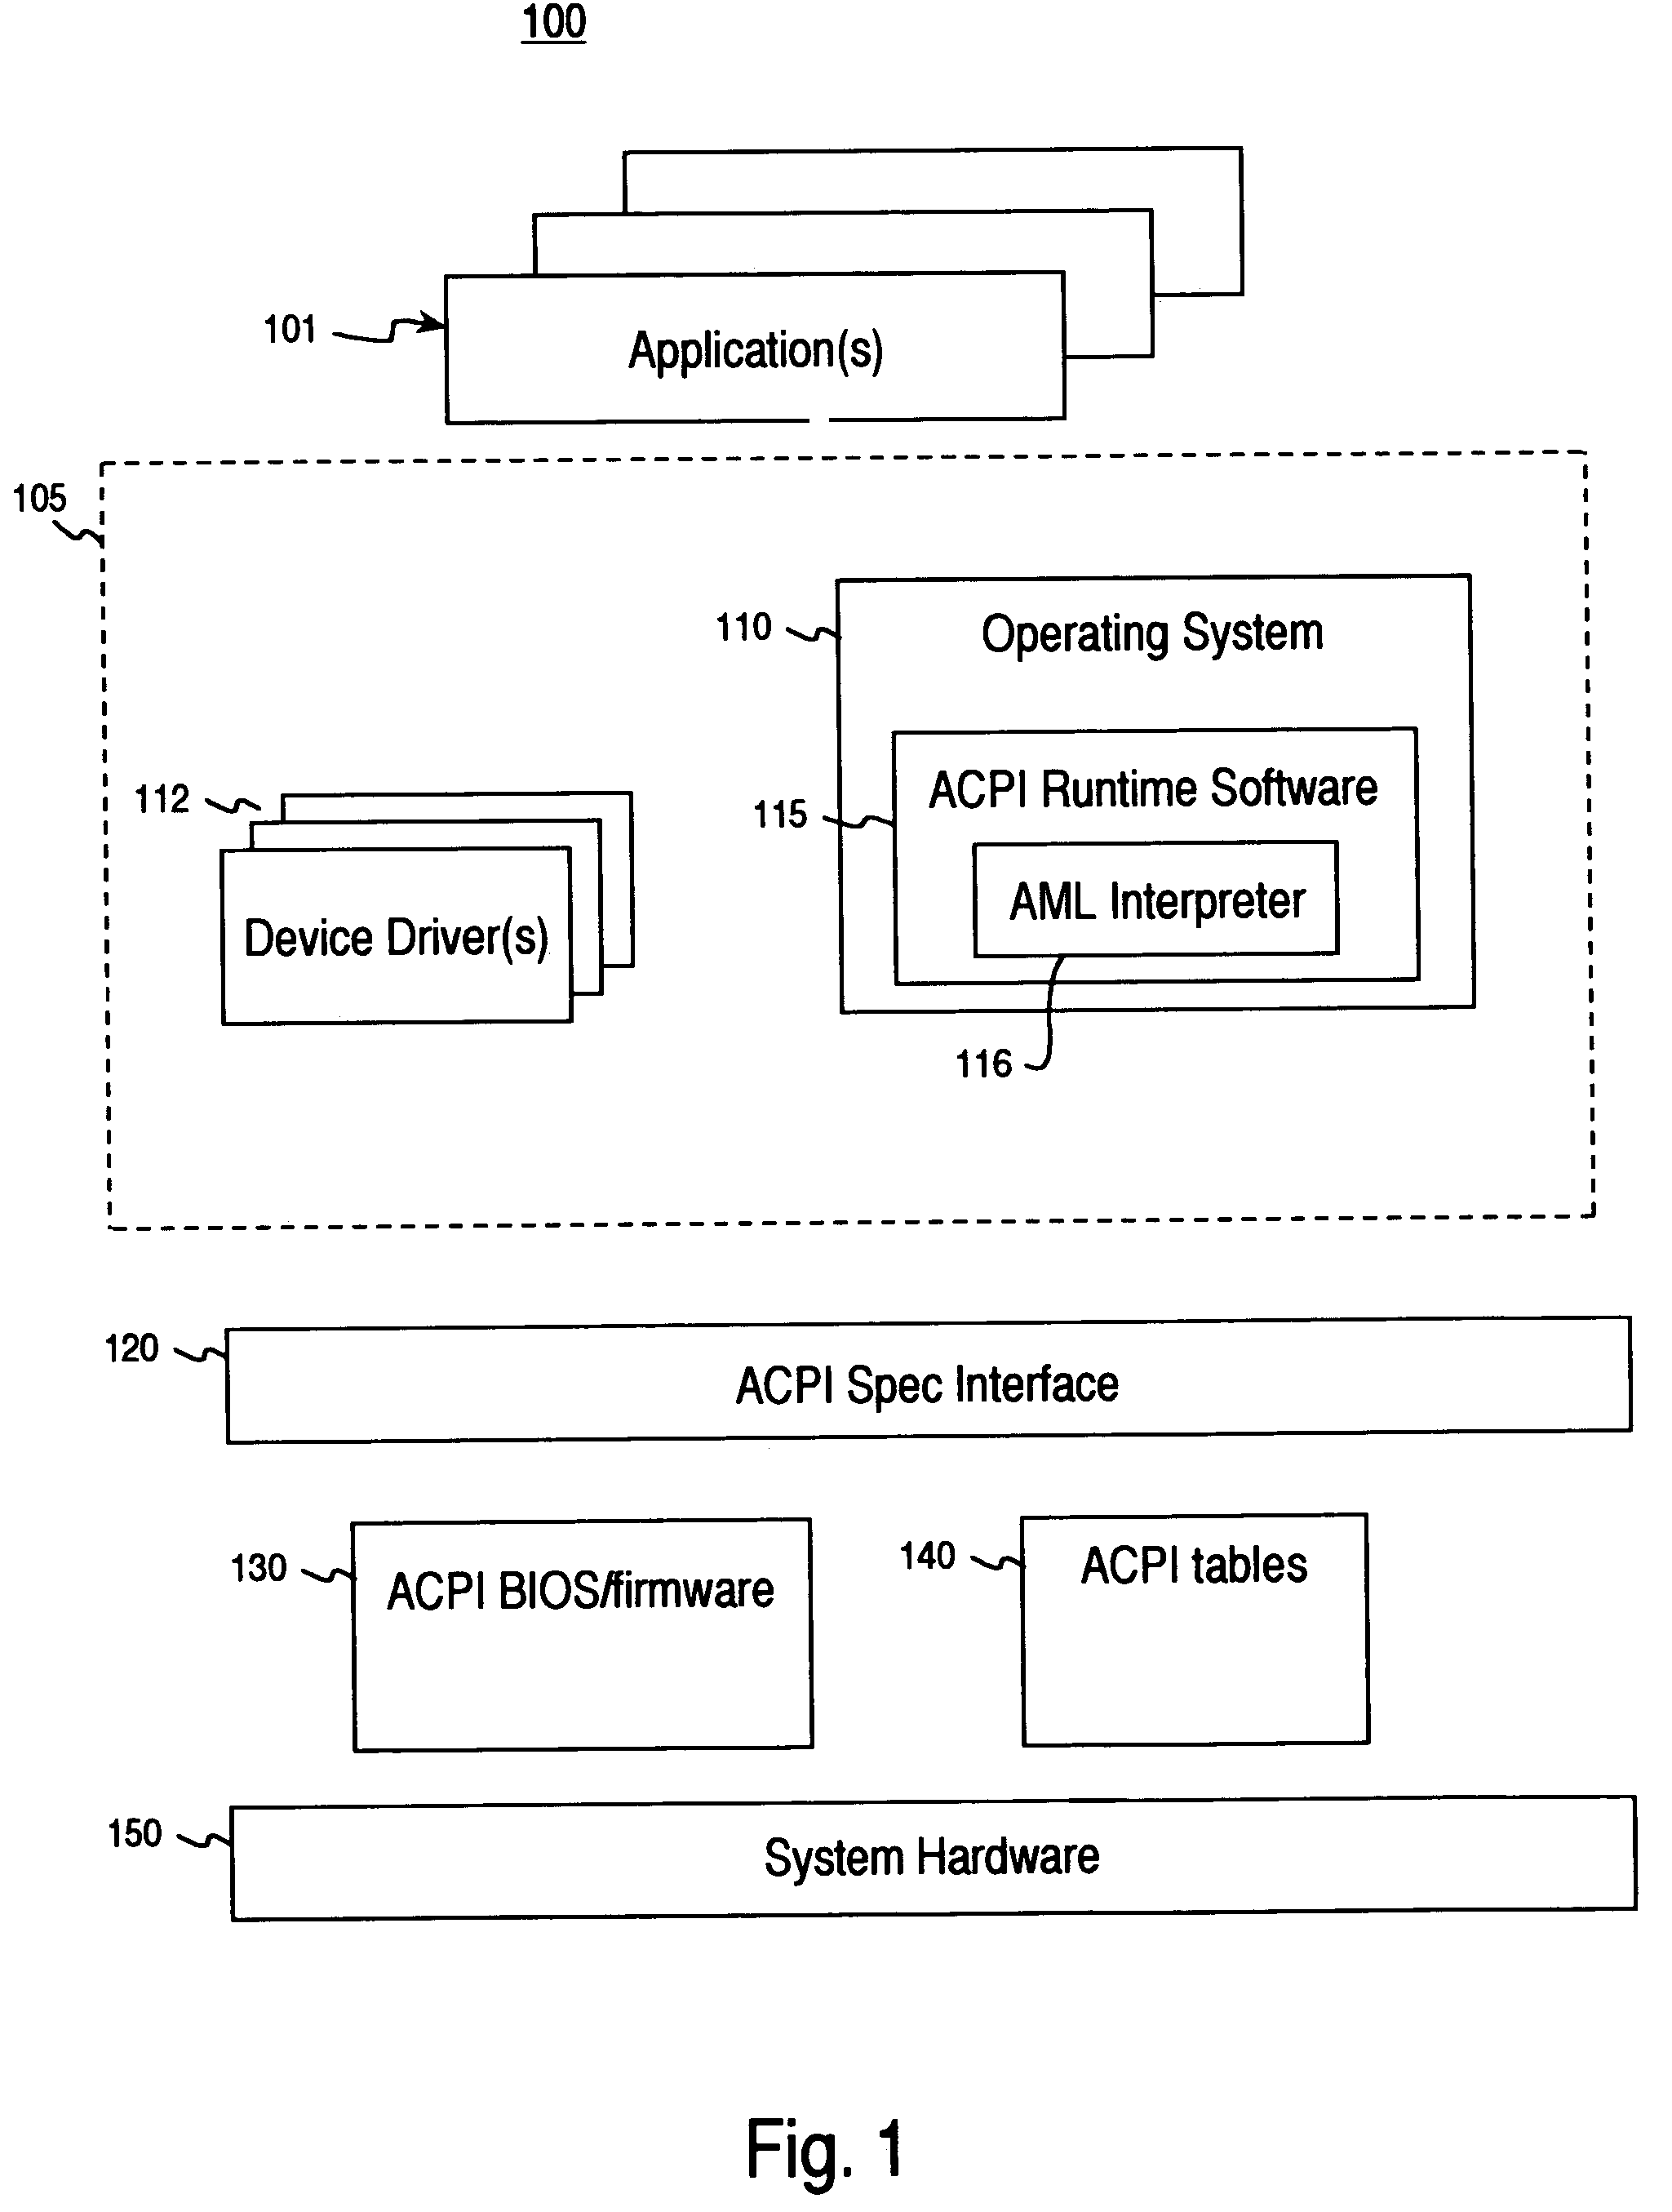 ACPI preprocessor